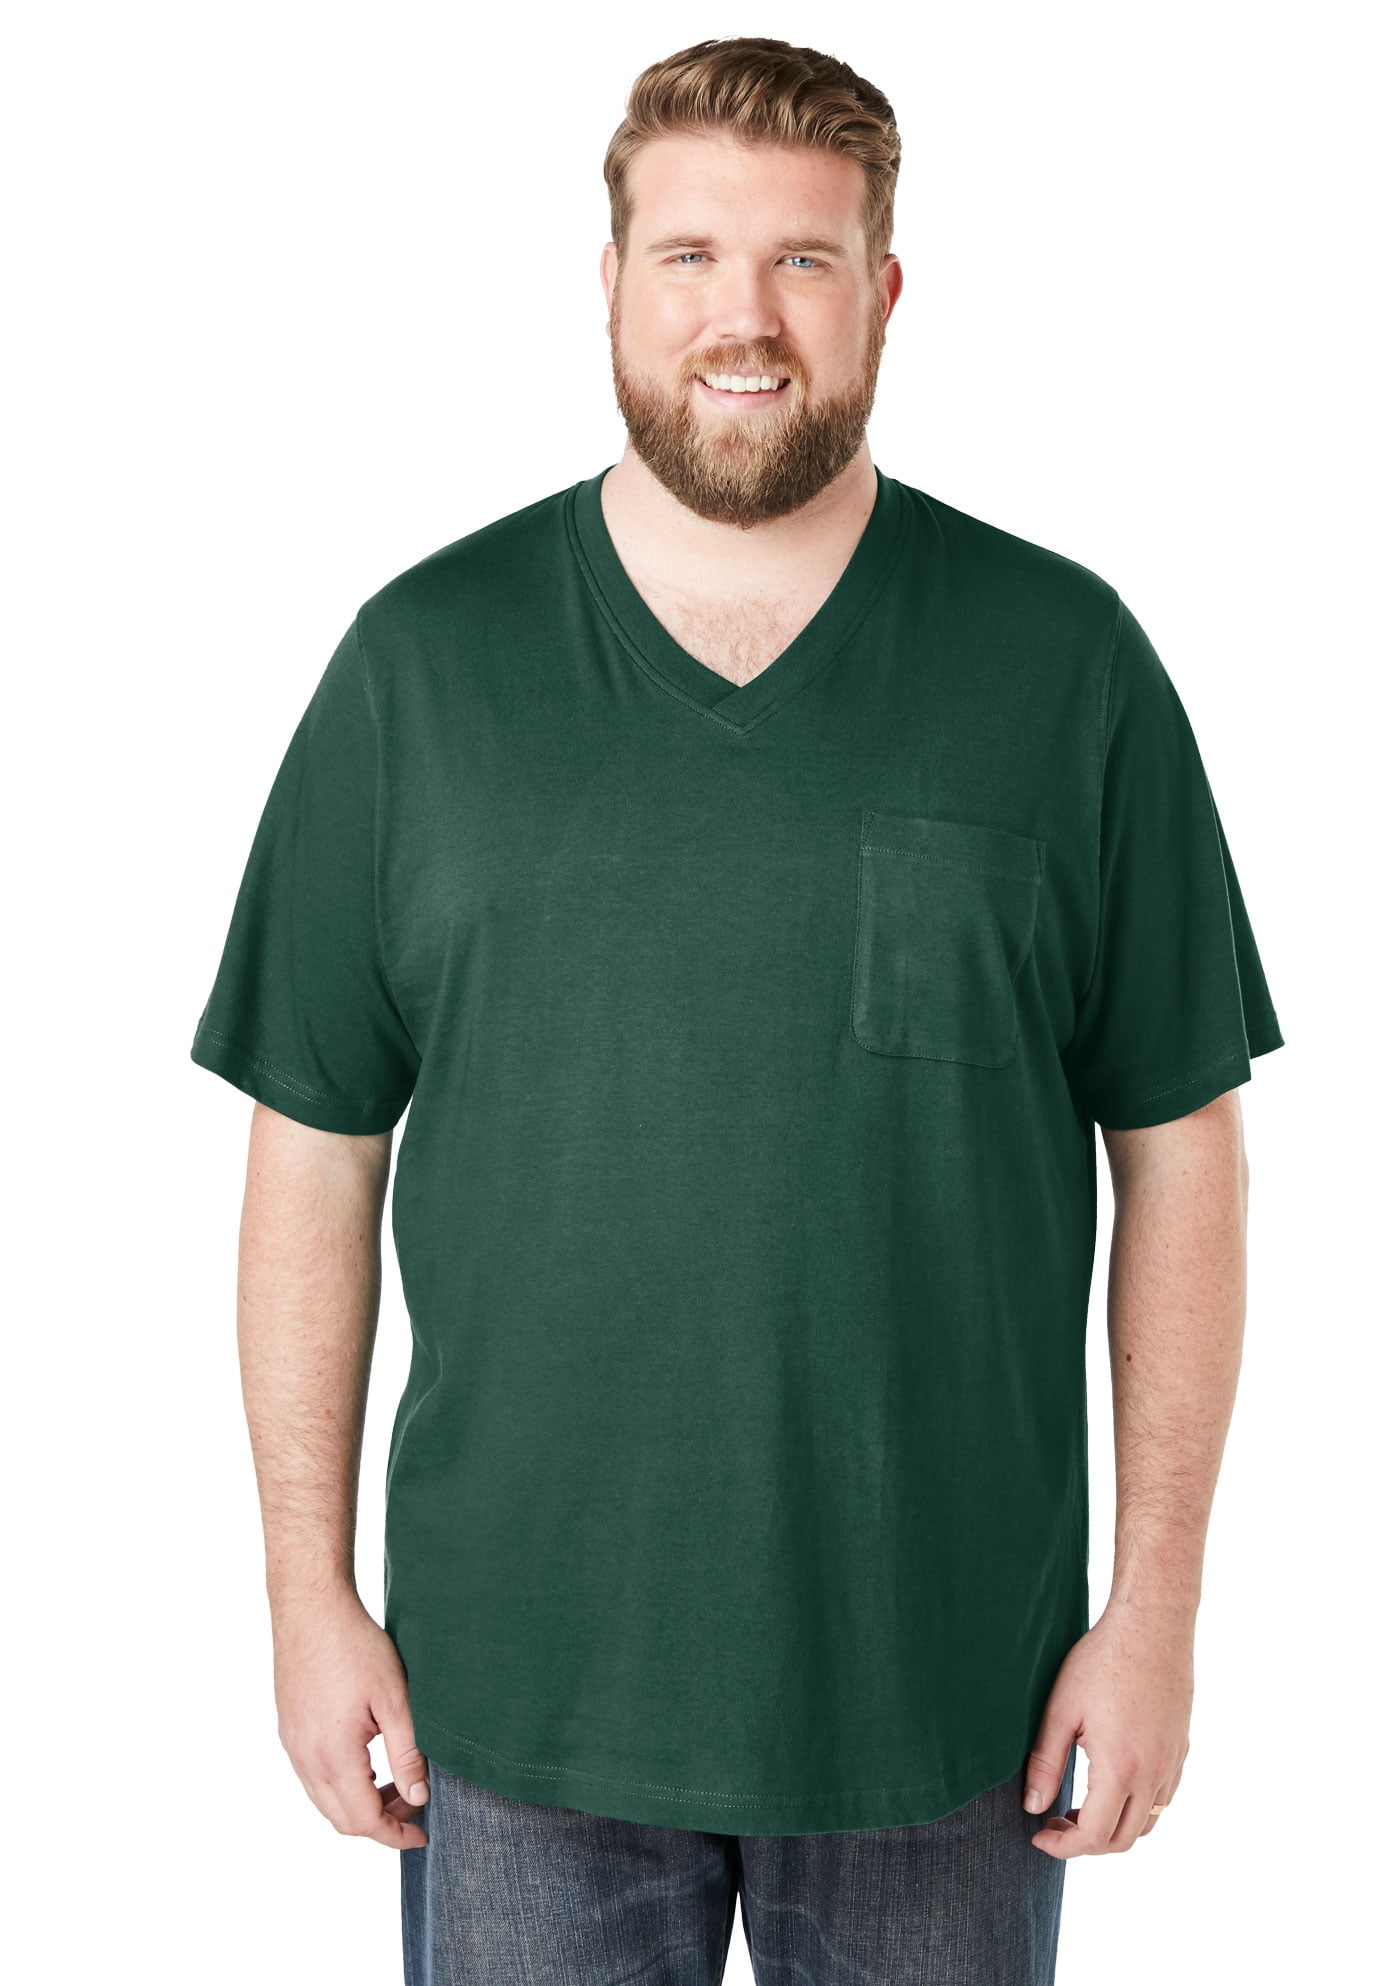 KI-8jcuD Tshirts Shirts For Men Mens Knitting Short Sleeved Casual Tshirt V  Neck Tshirt Big Tall T Shirts For Men Mens Big & Tall Shirts Mens Size Medium  Shirts Mens Tee Shirt